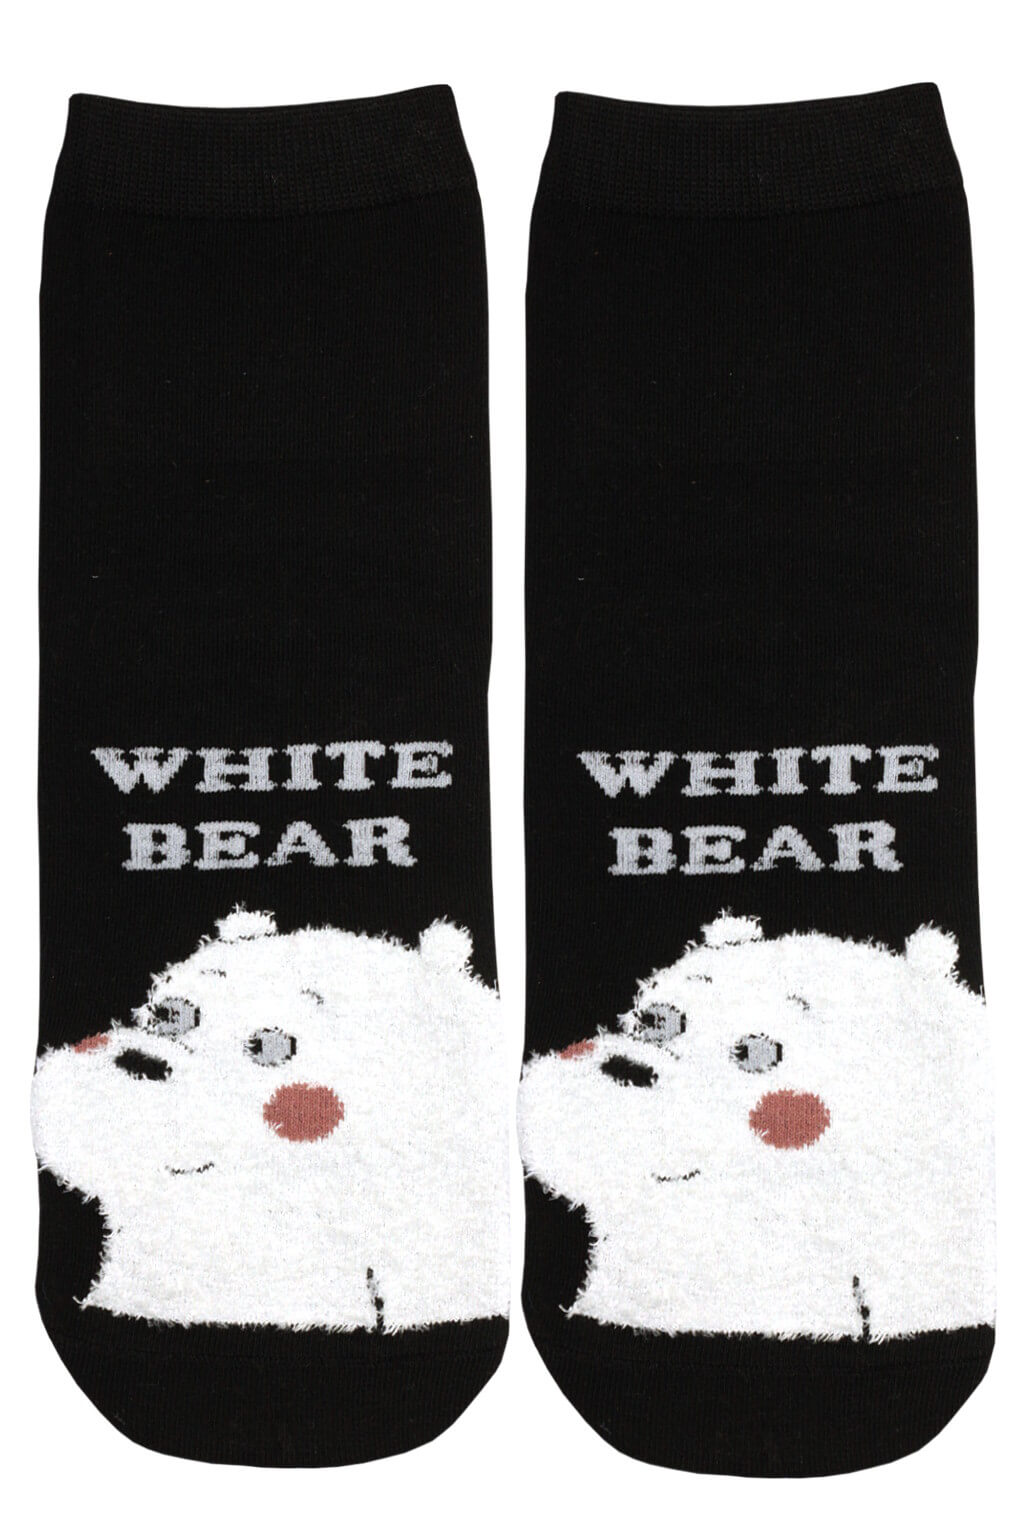 Happy White Bear veselé ponožky 35-38 černá